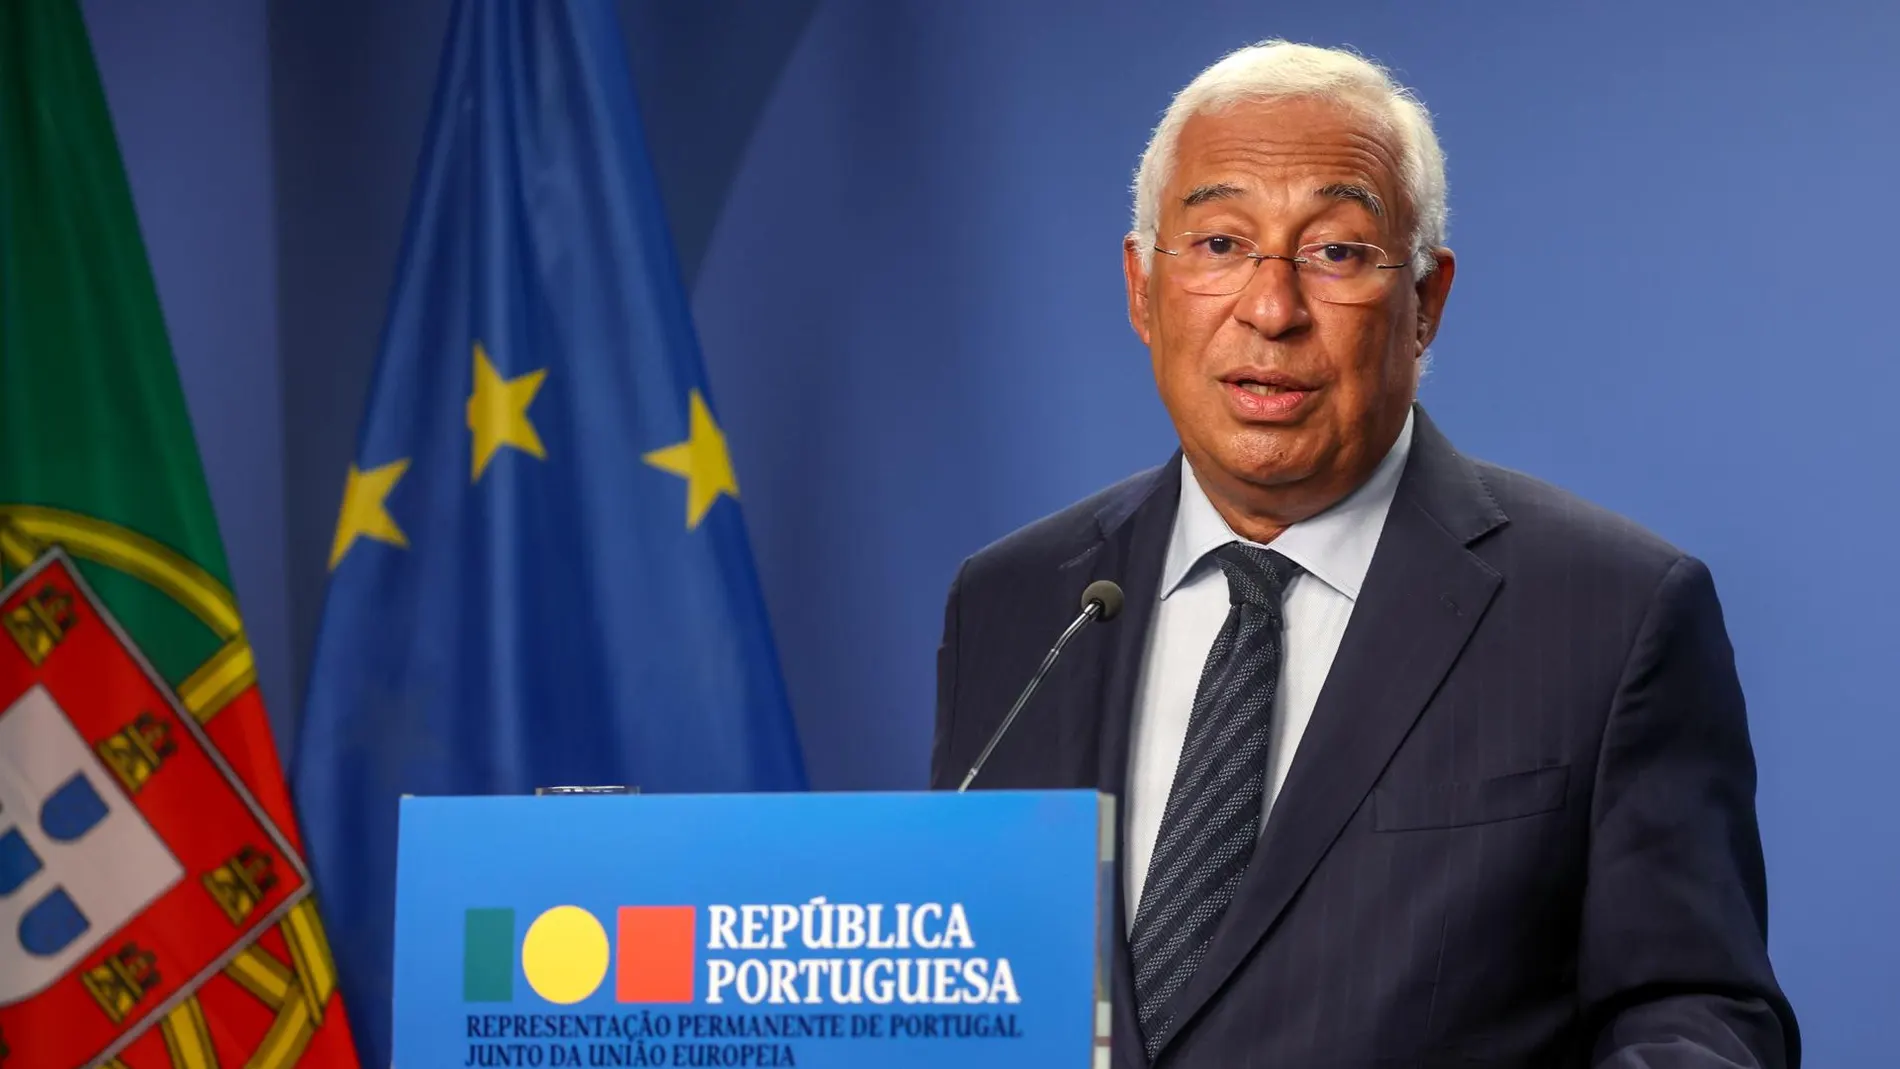 Πορτογαλία: Ο Αντόνιο Κόστα παραιτήθηκε από πρωθυπουργός λόγω… συνωνυμίας – Το τραγικό λάθος των αρχών